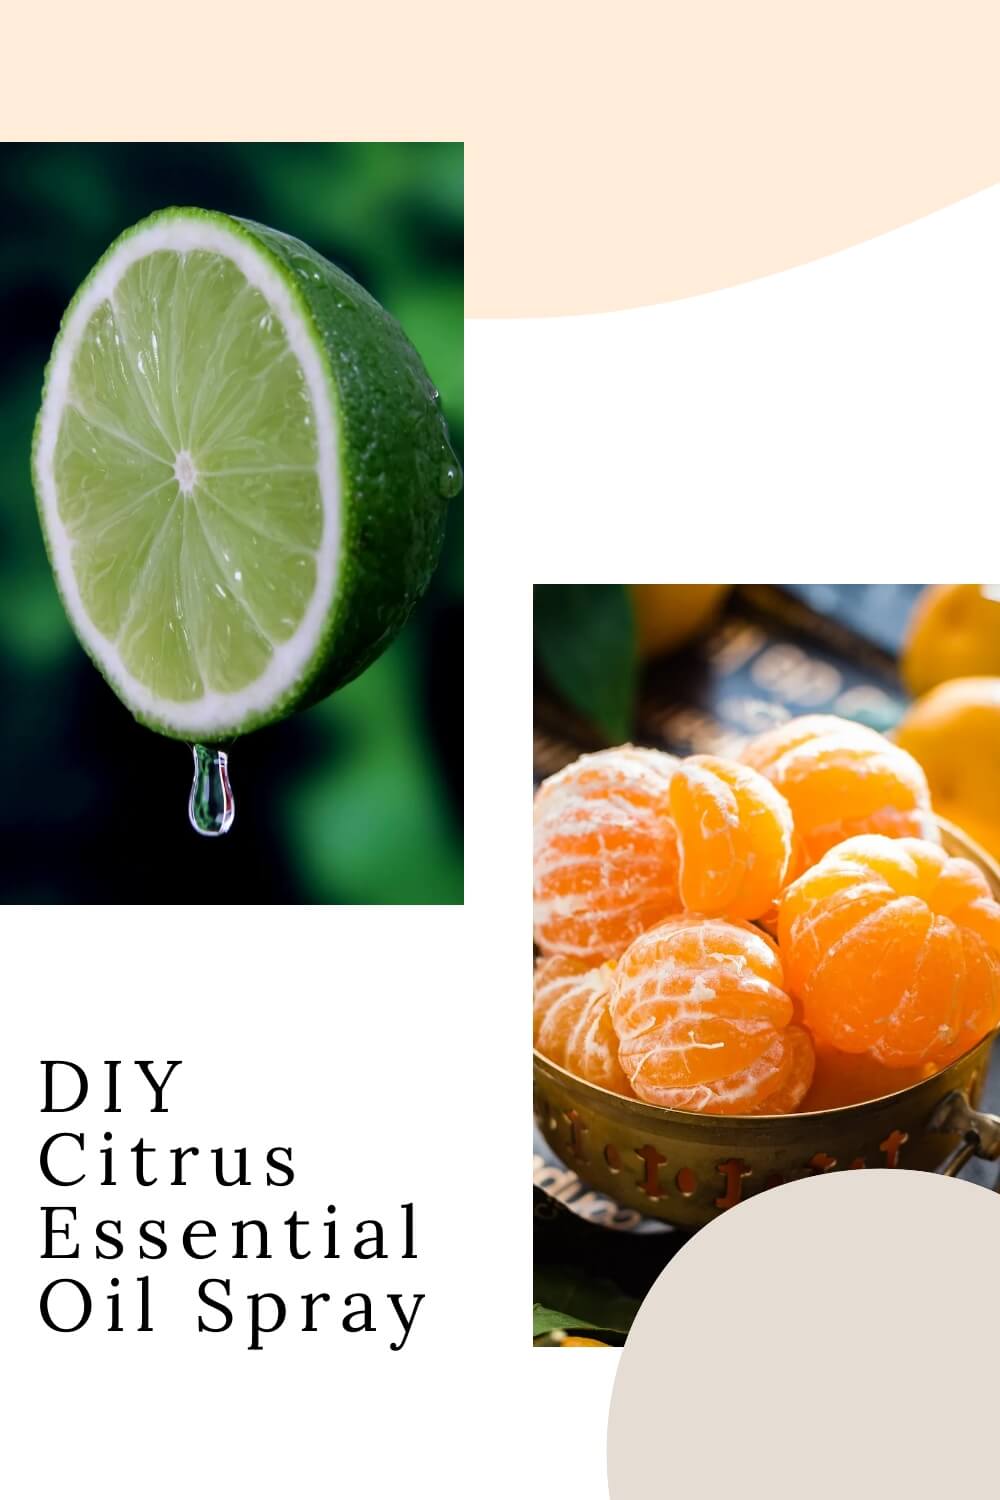 Citrus Essential Oil Spray Recipe